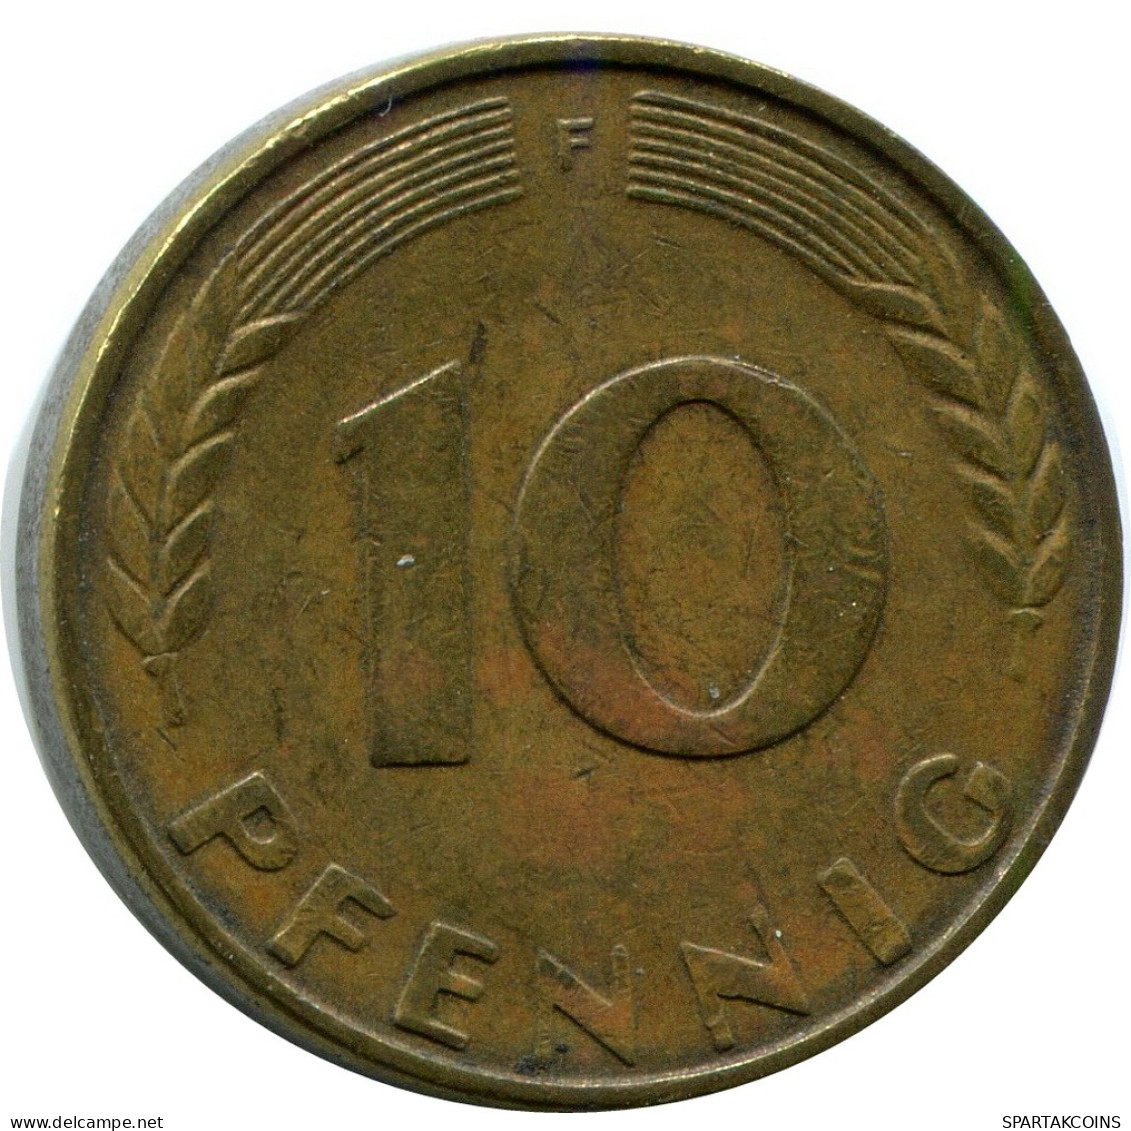 10 PFENNIG 1967 F WEST & UNIFIED GERMANY Coin #AZ460.U - 10 Pfennig